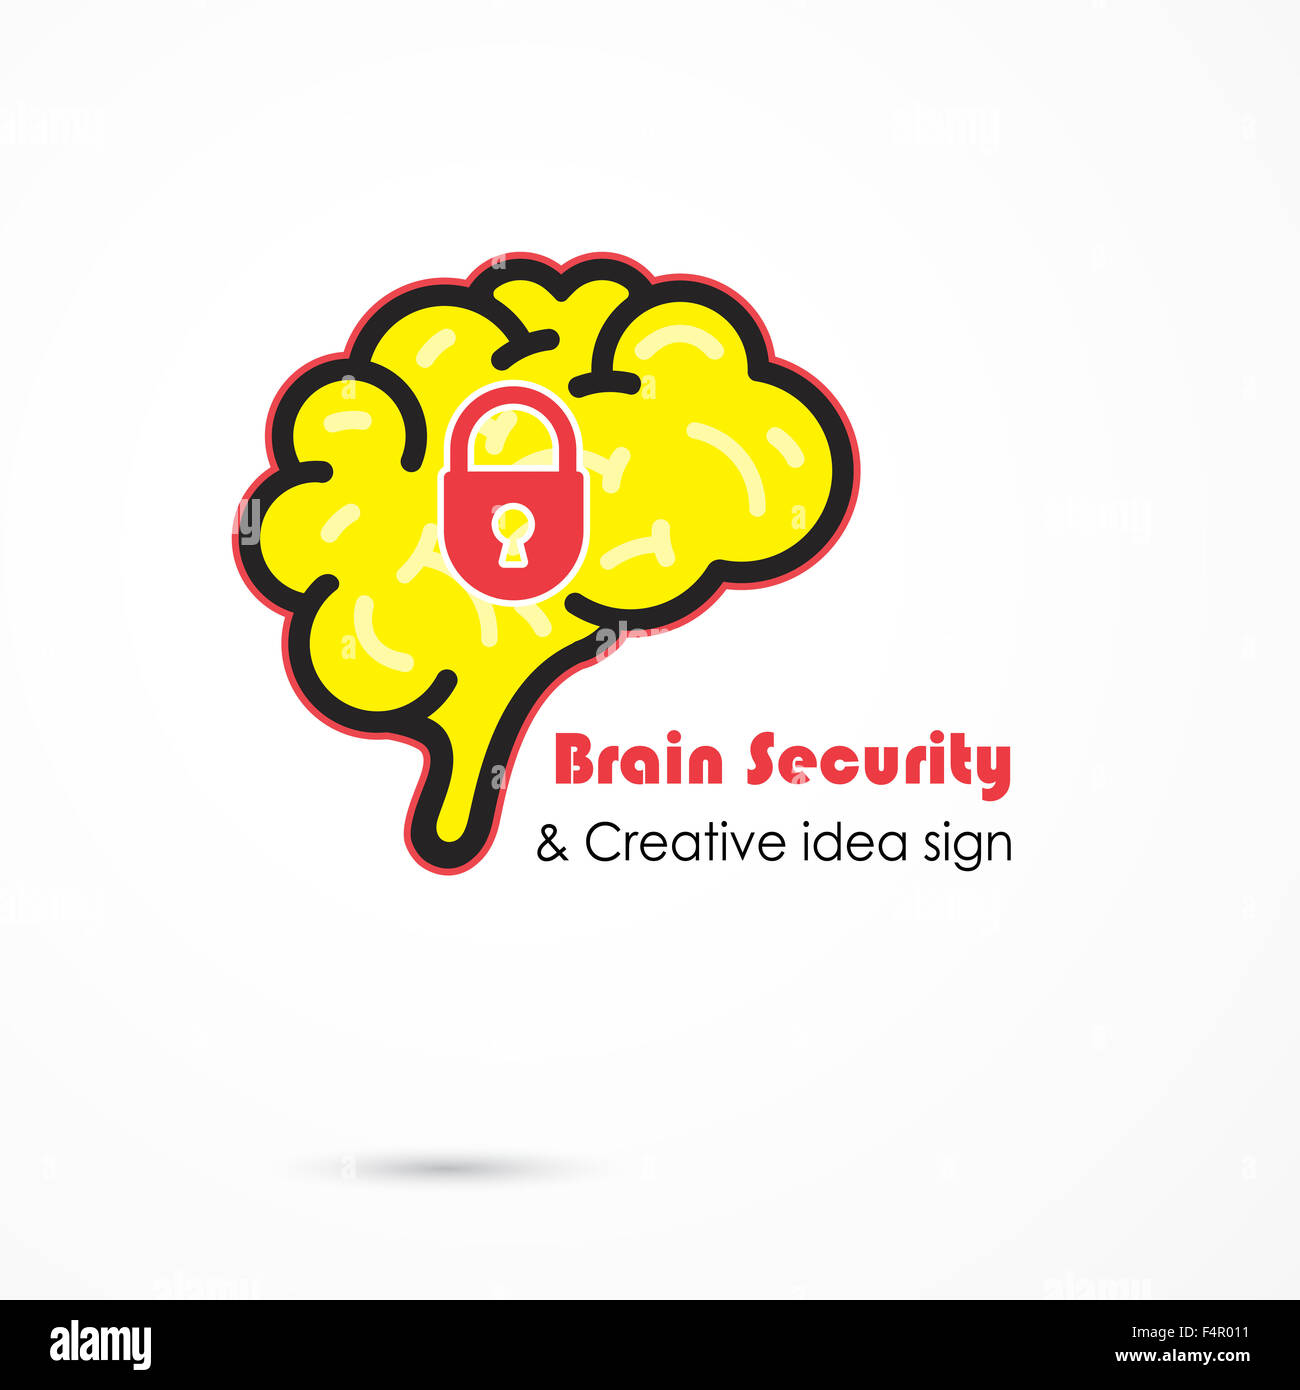 Kreative Gehirnhälfte Sicherheitsvorlage abstrakte Logo Design. Idee zu generieren. Brainstorming-Logo-Konzept-Symbol. Stockfoto